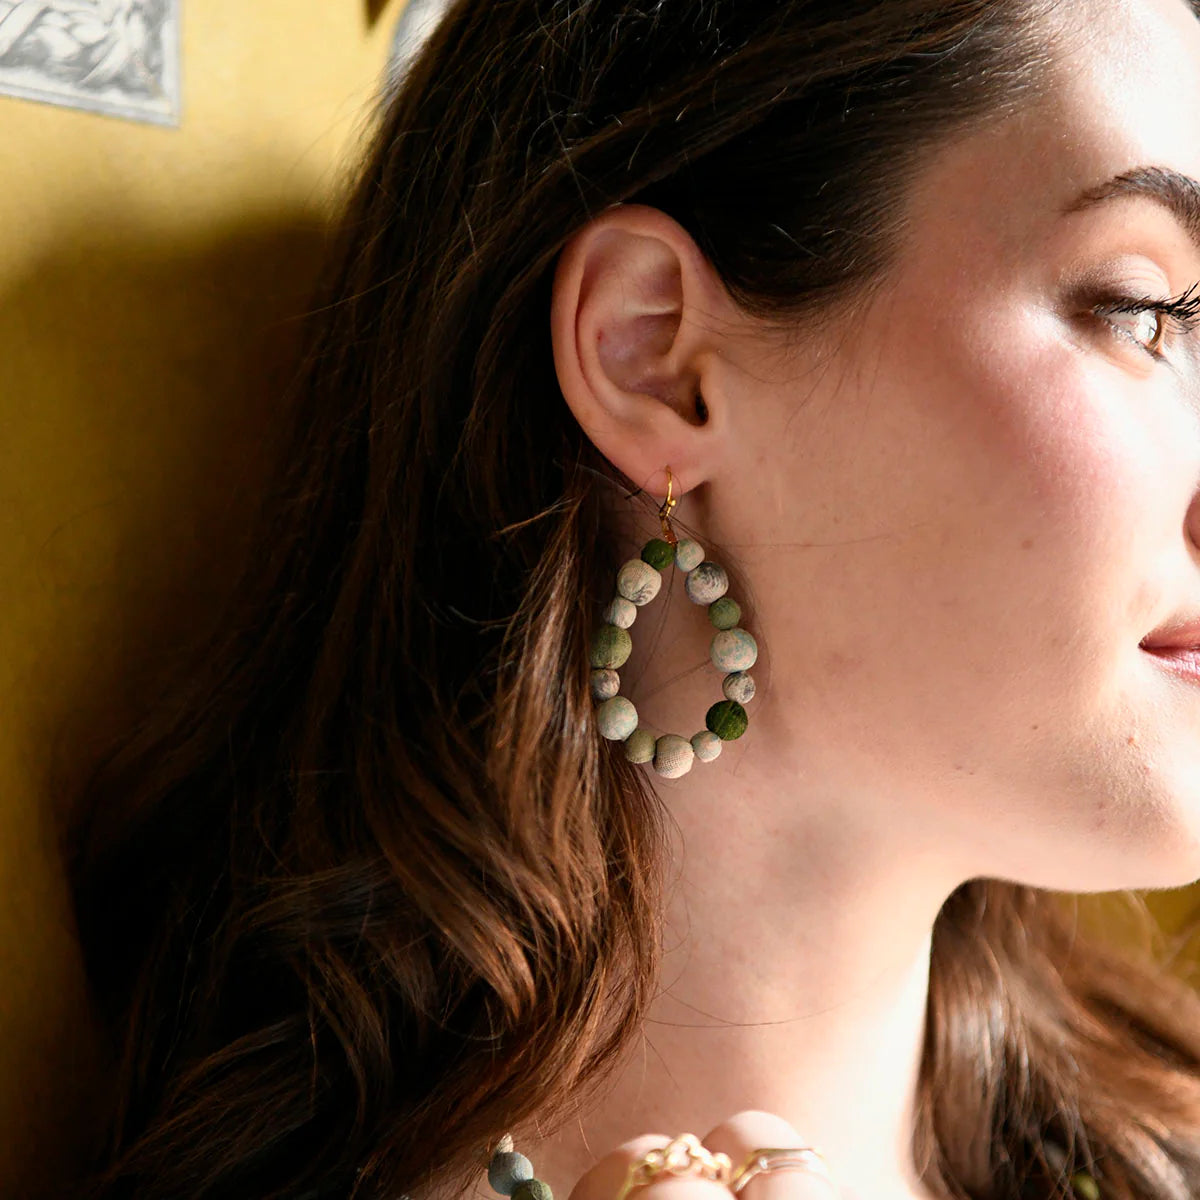 Angelco Accessories Teardrop kantha earrings - sea foam - worn by model